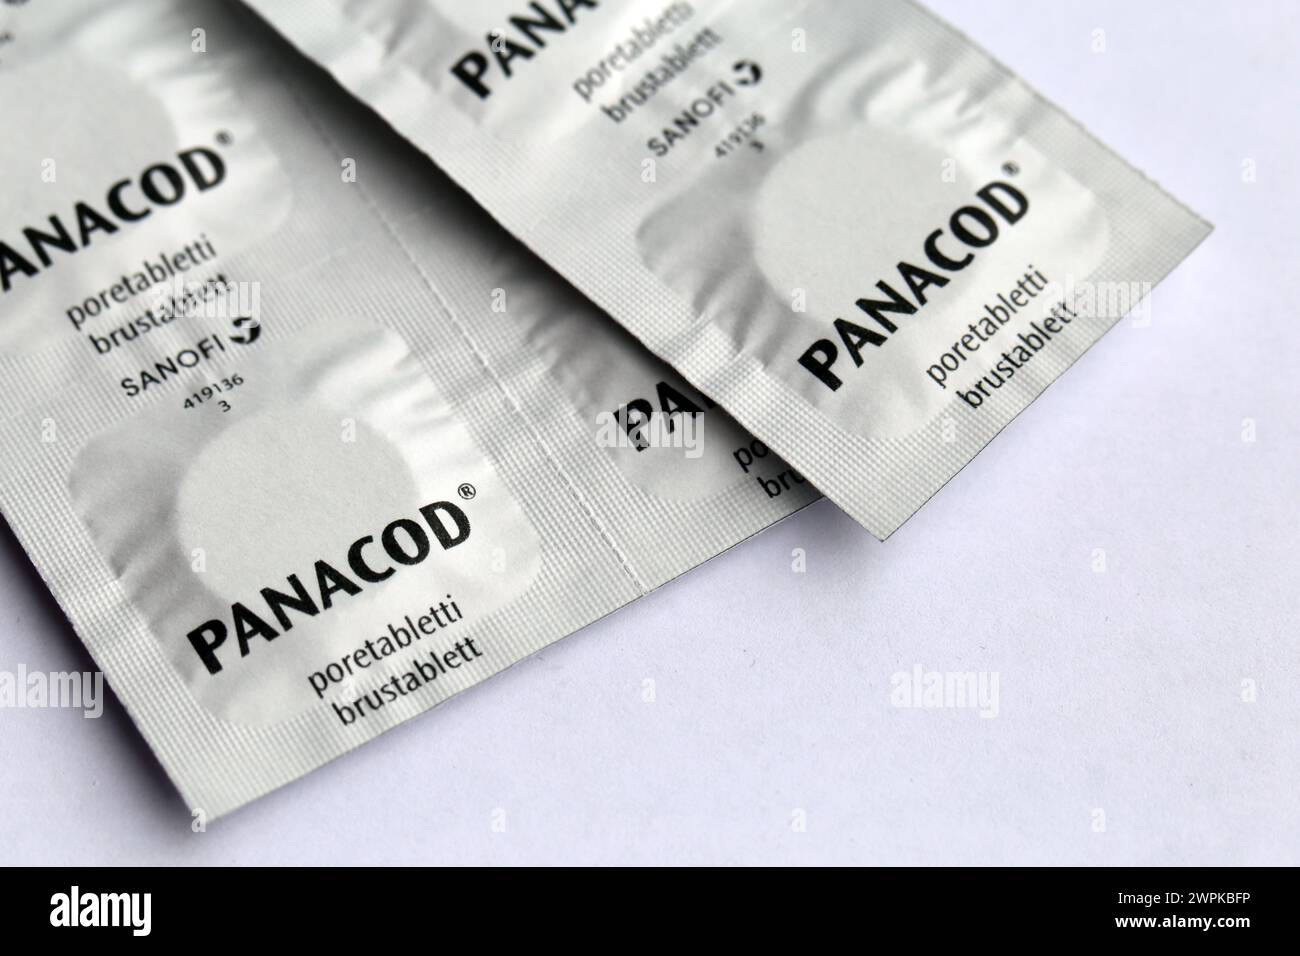 Espoo, Finlande - avril 2020 : comprimés effervescents Panacod. Médicament analgésique sur ordonnance. Ce médicament analgésique crée une dépendance et peut être abusé. Banque D'Images